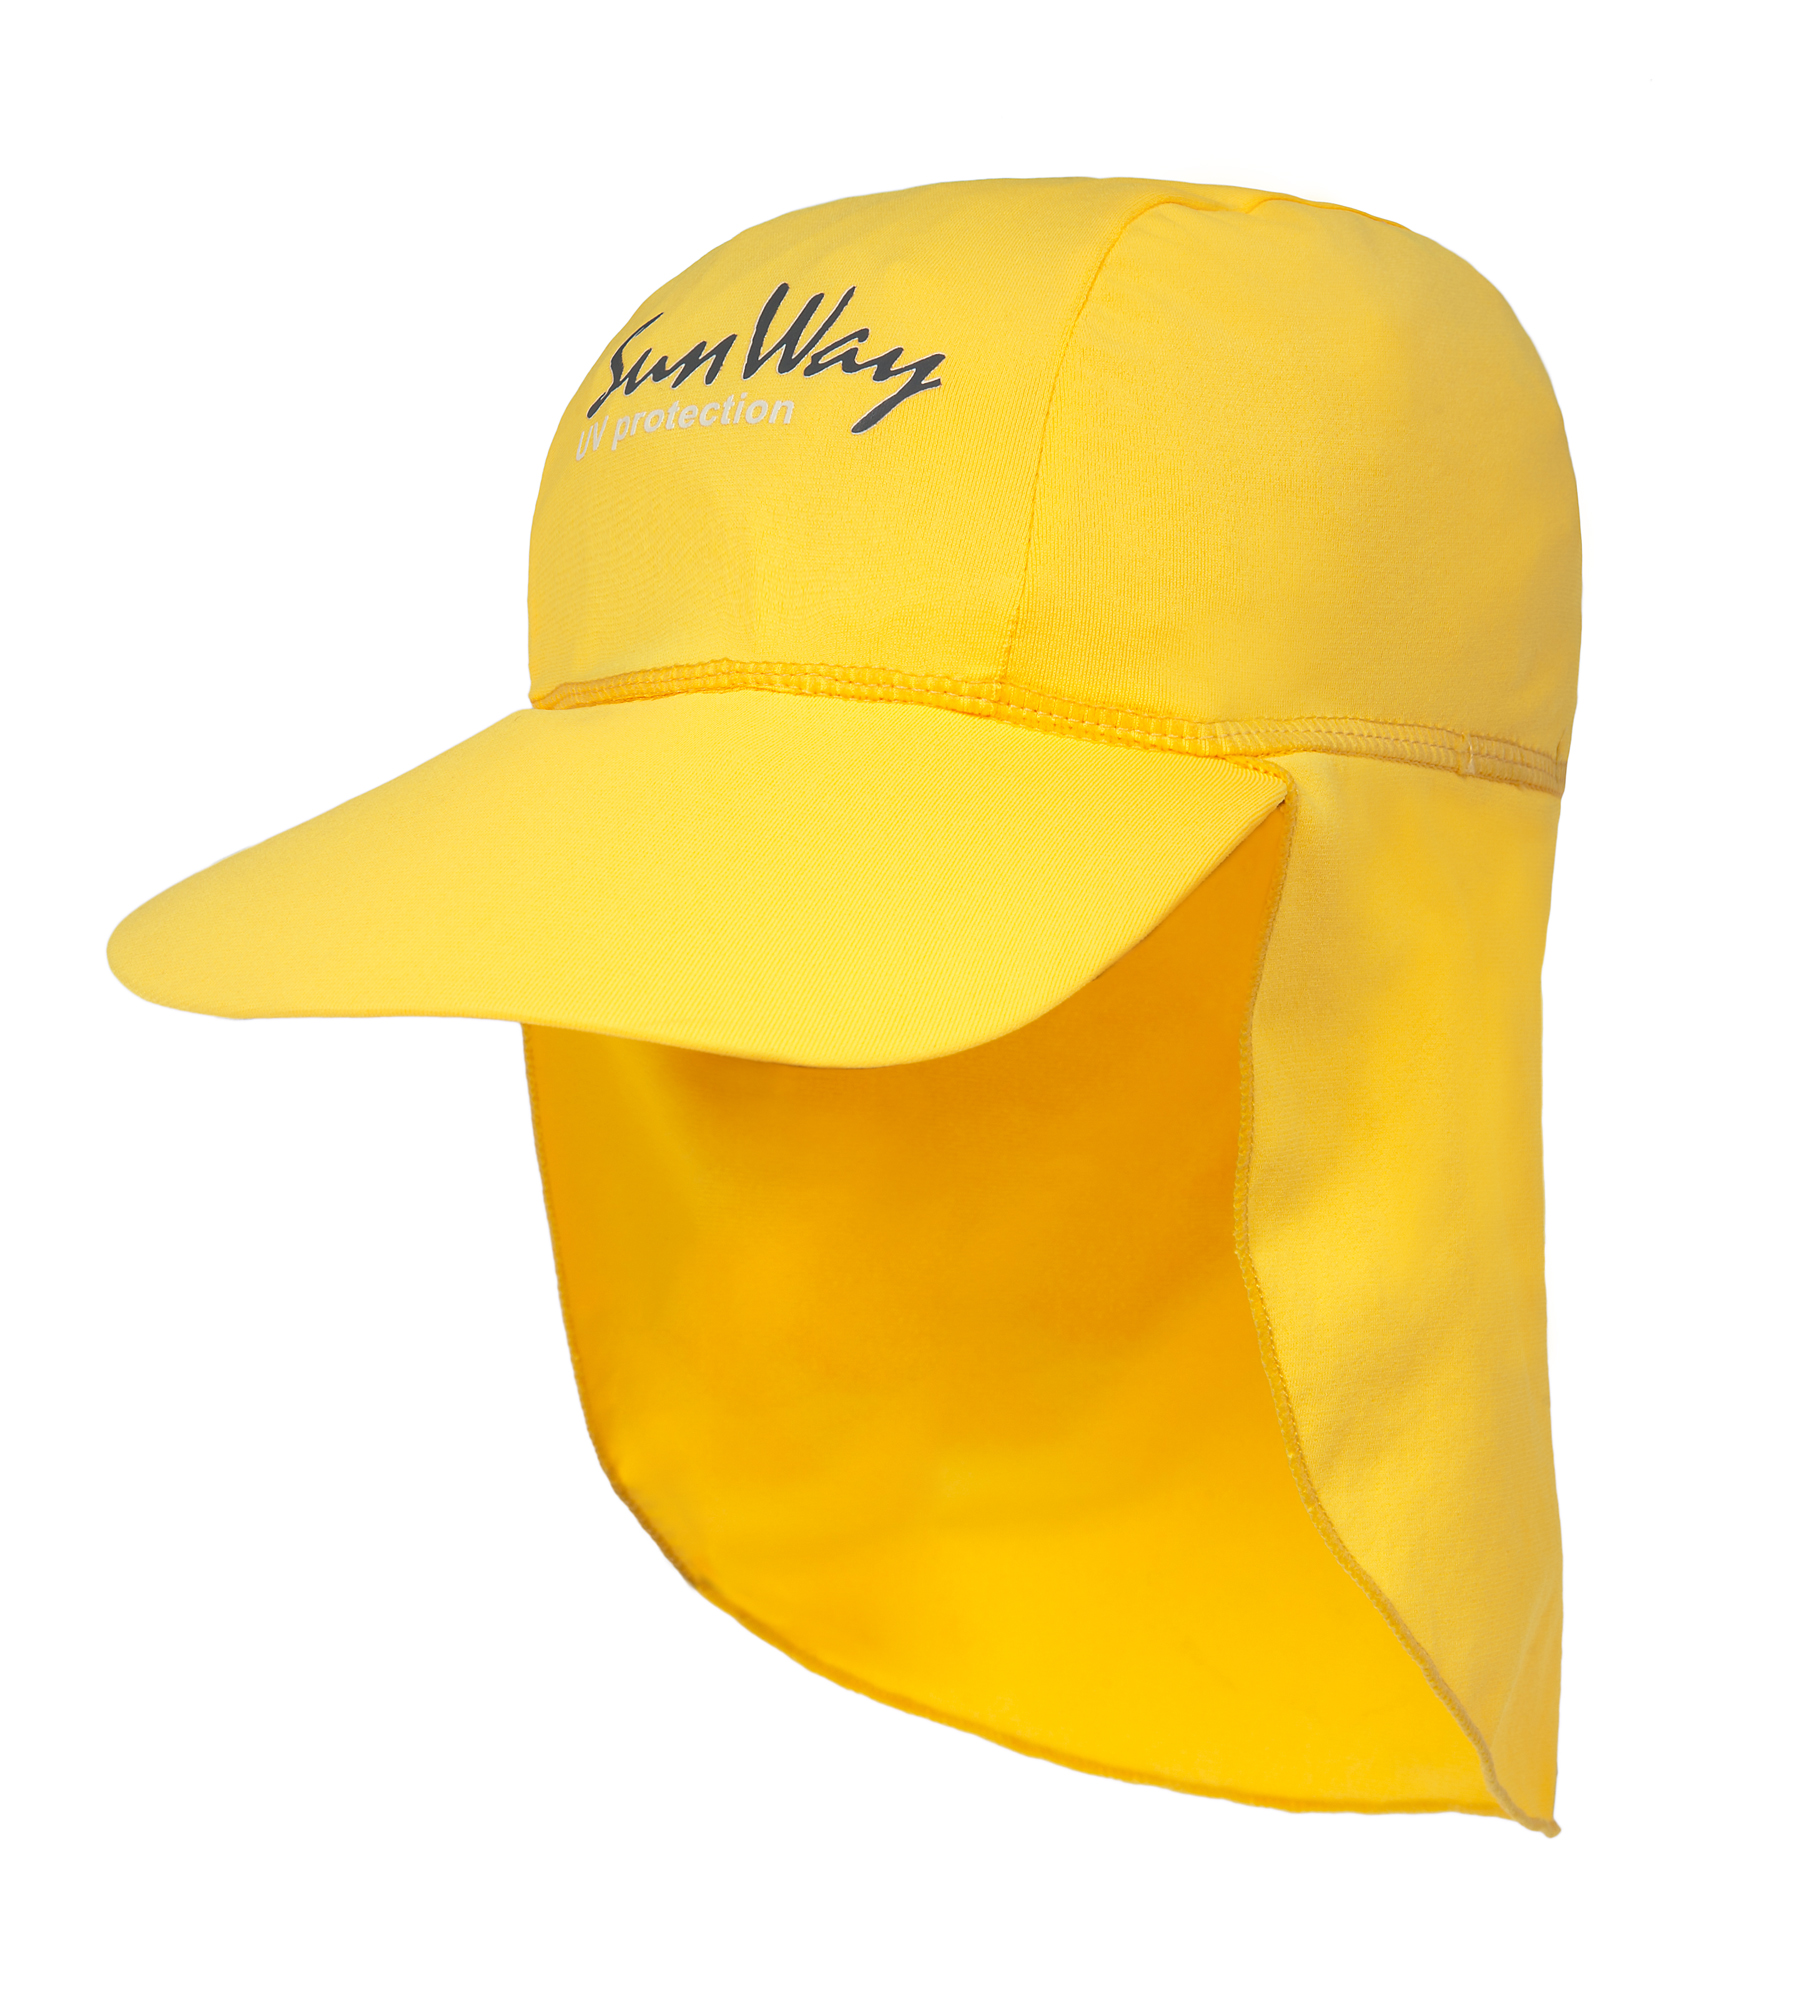 Αντηλιακό καπέλο baby UV κίτρινο